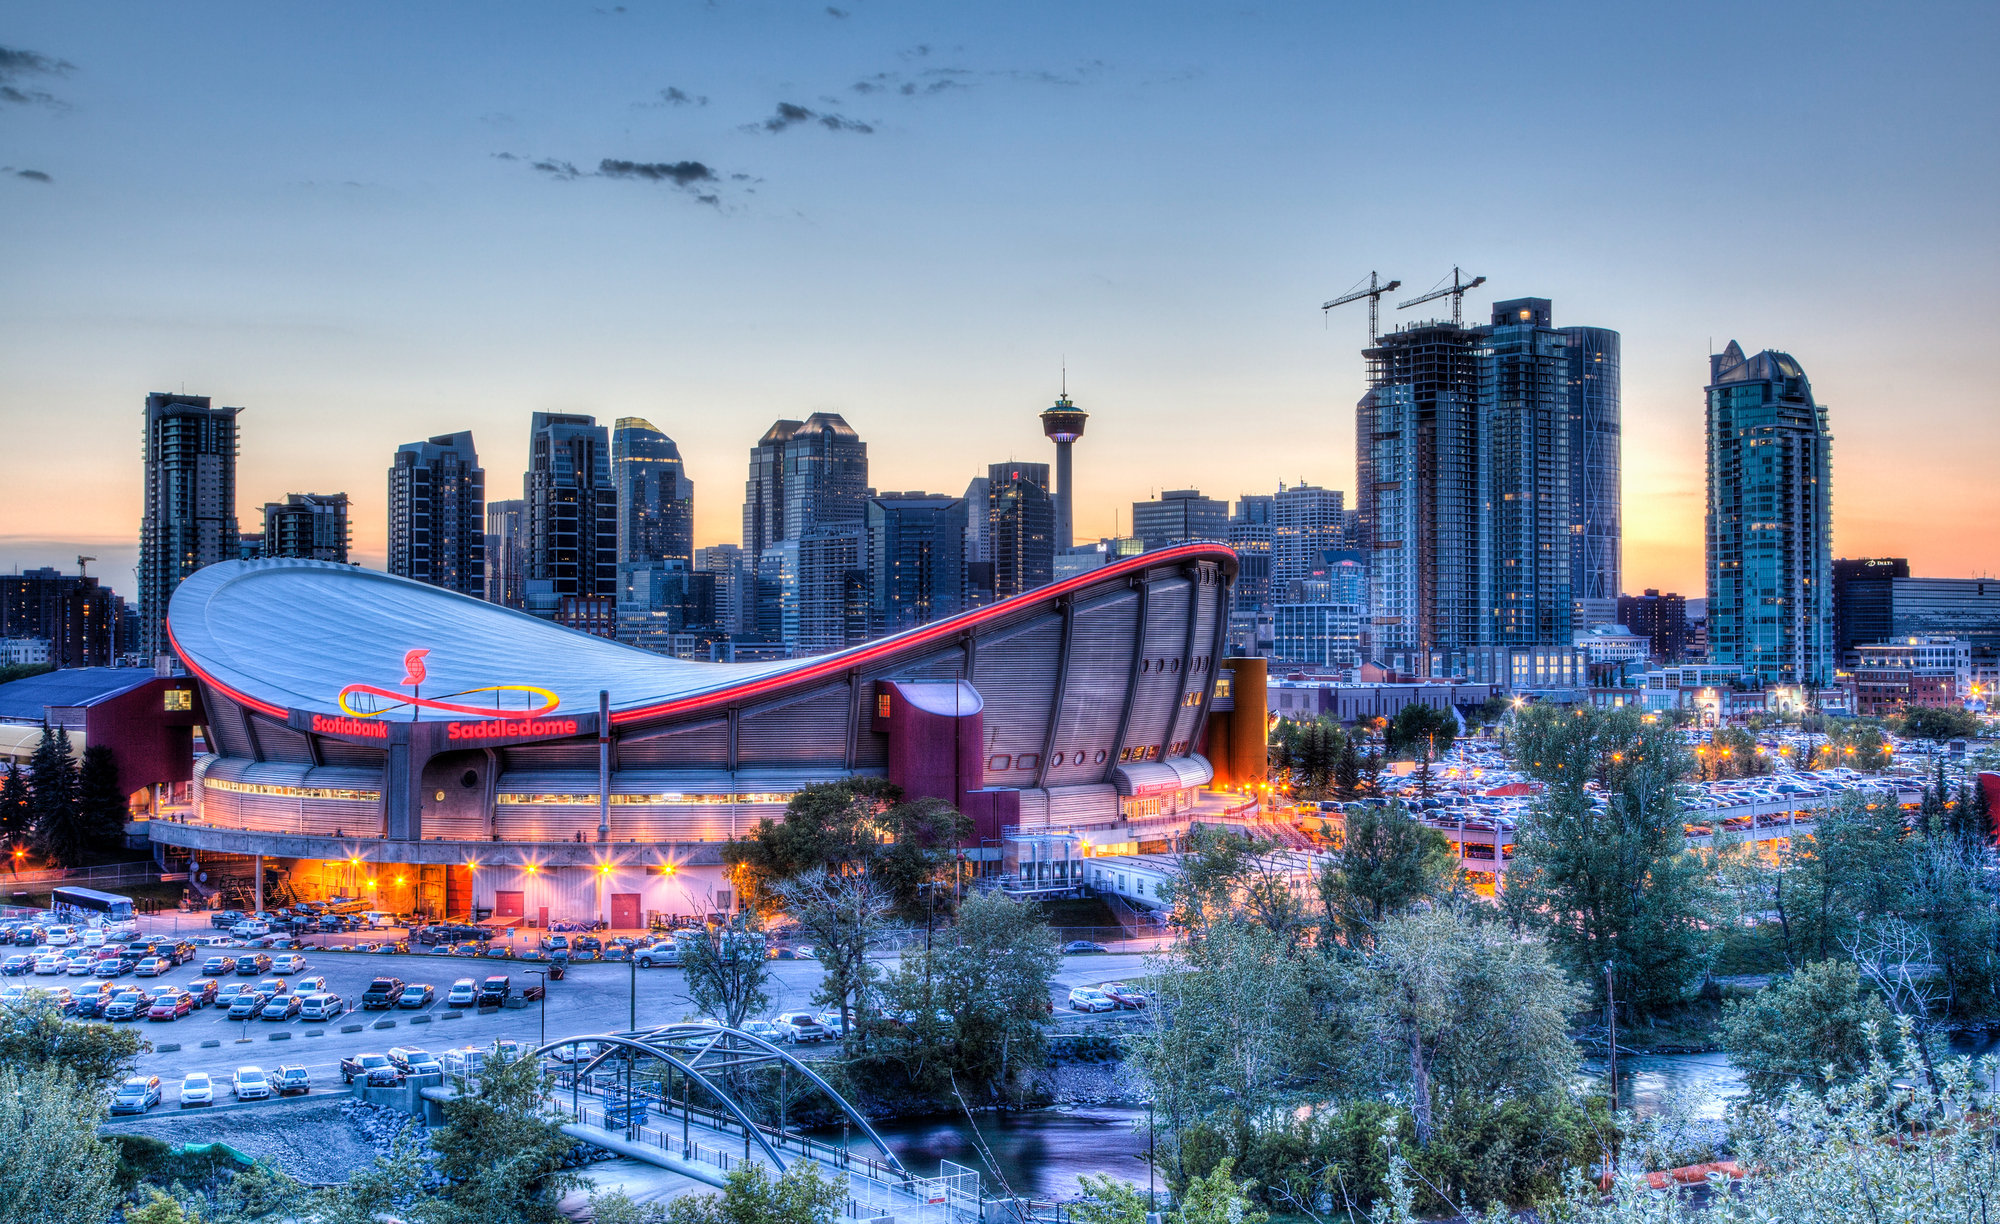 The Calgary Saddledome